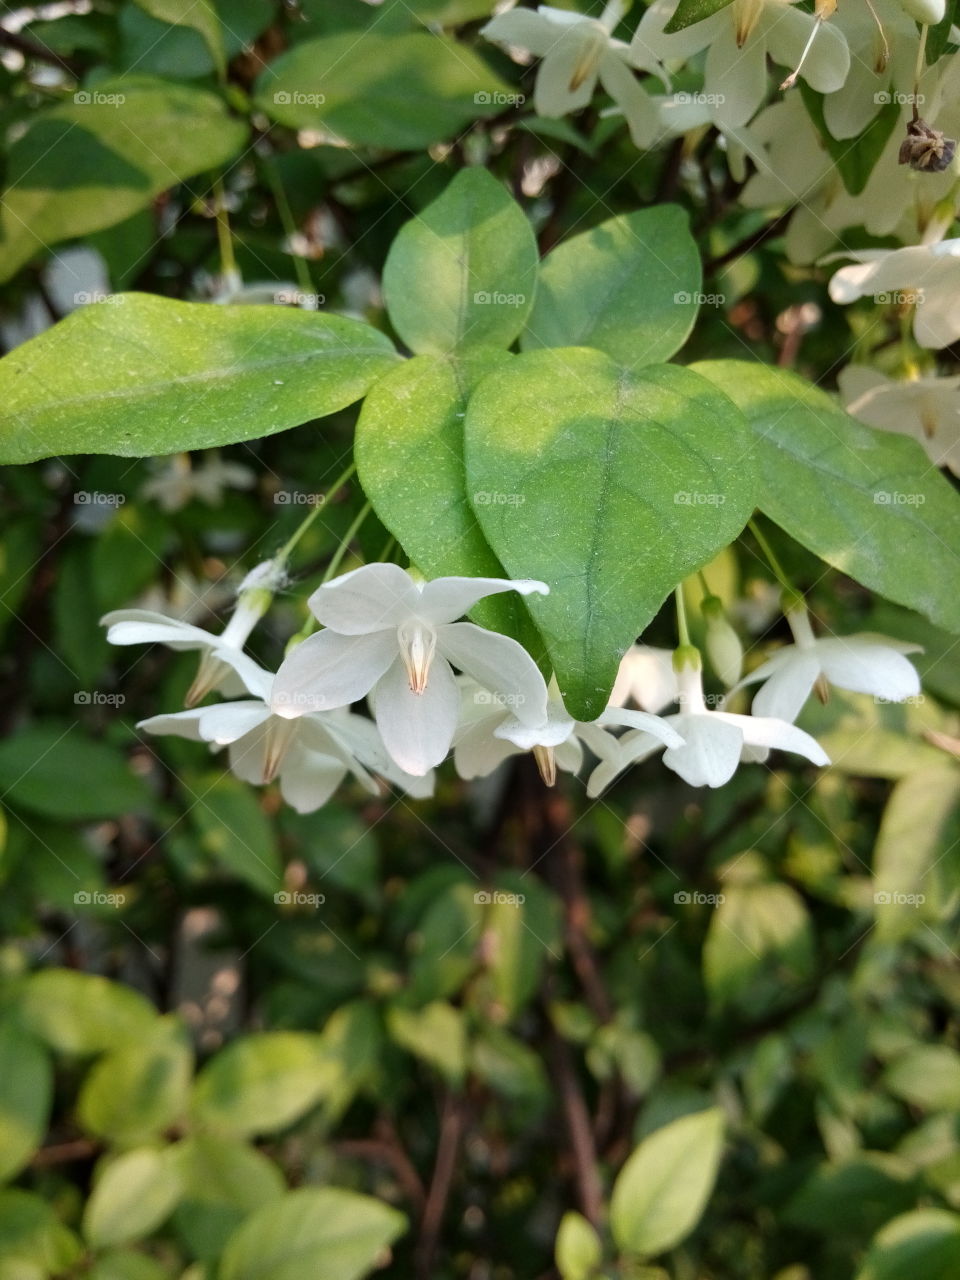 Wrightia religiosa Benth. White flower.Wrightia religiosa Benth